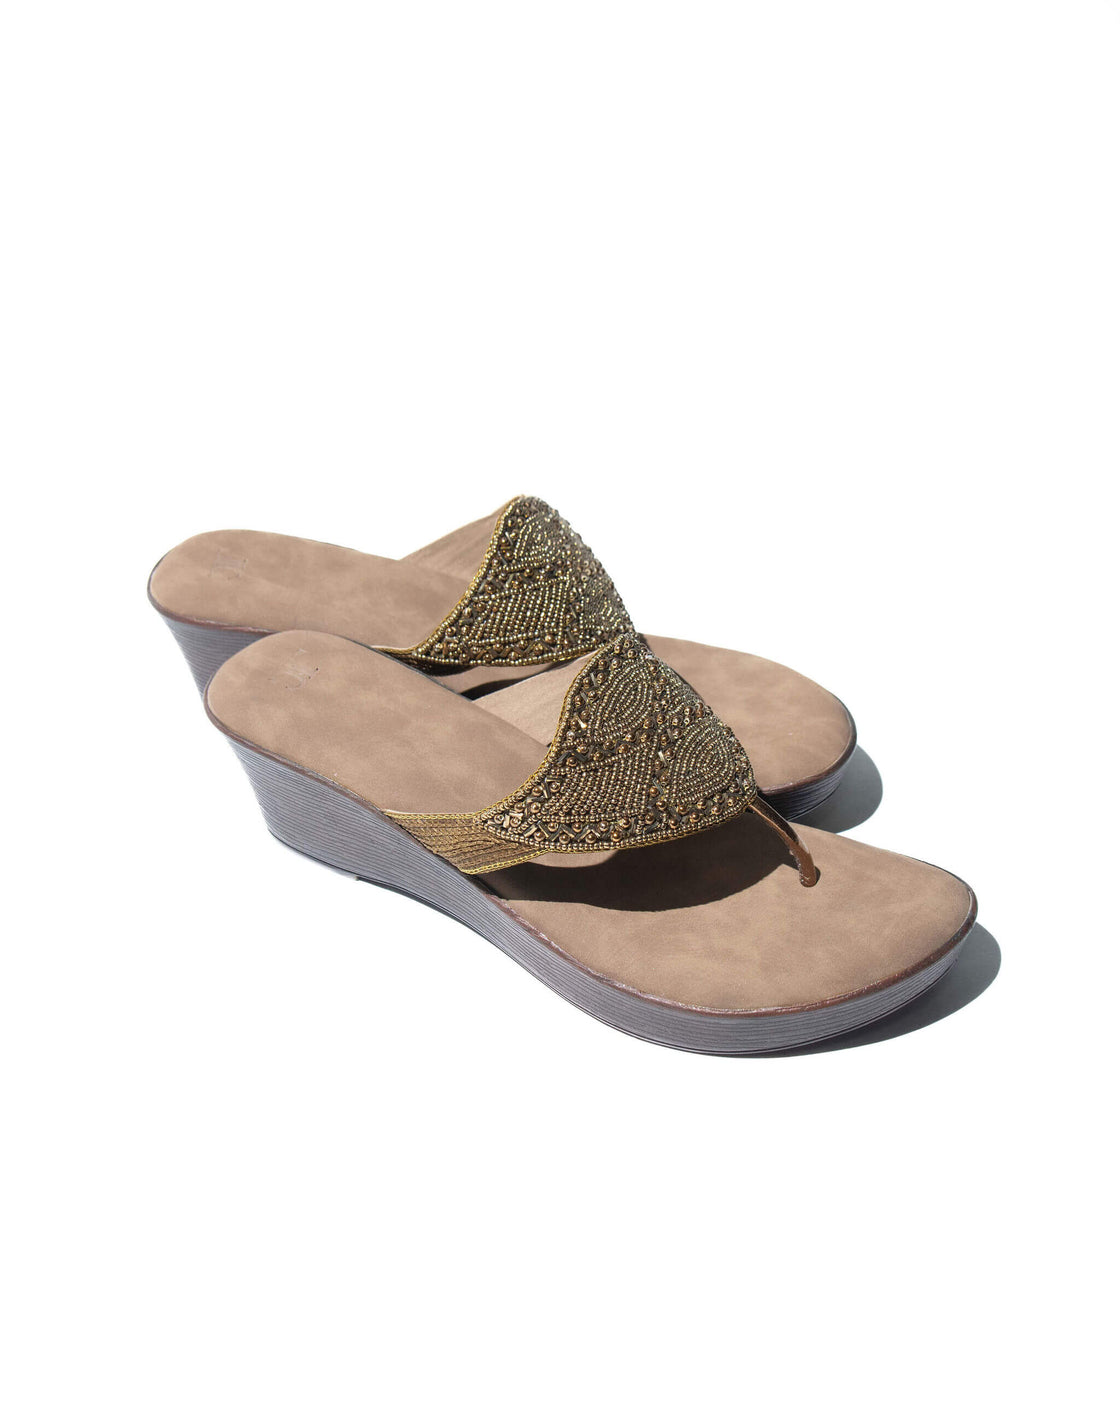 Beaded upper - Wedge sandal